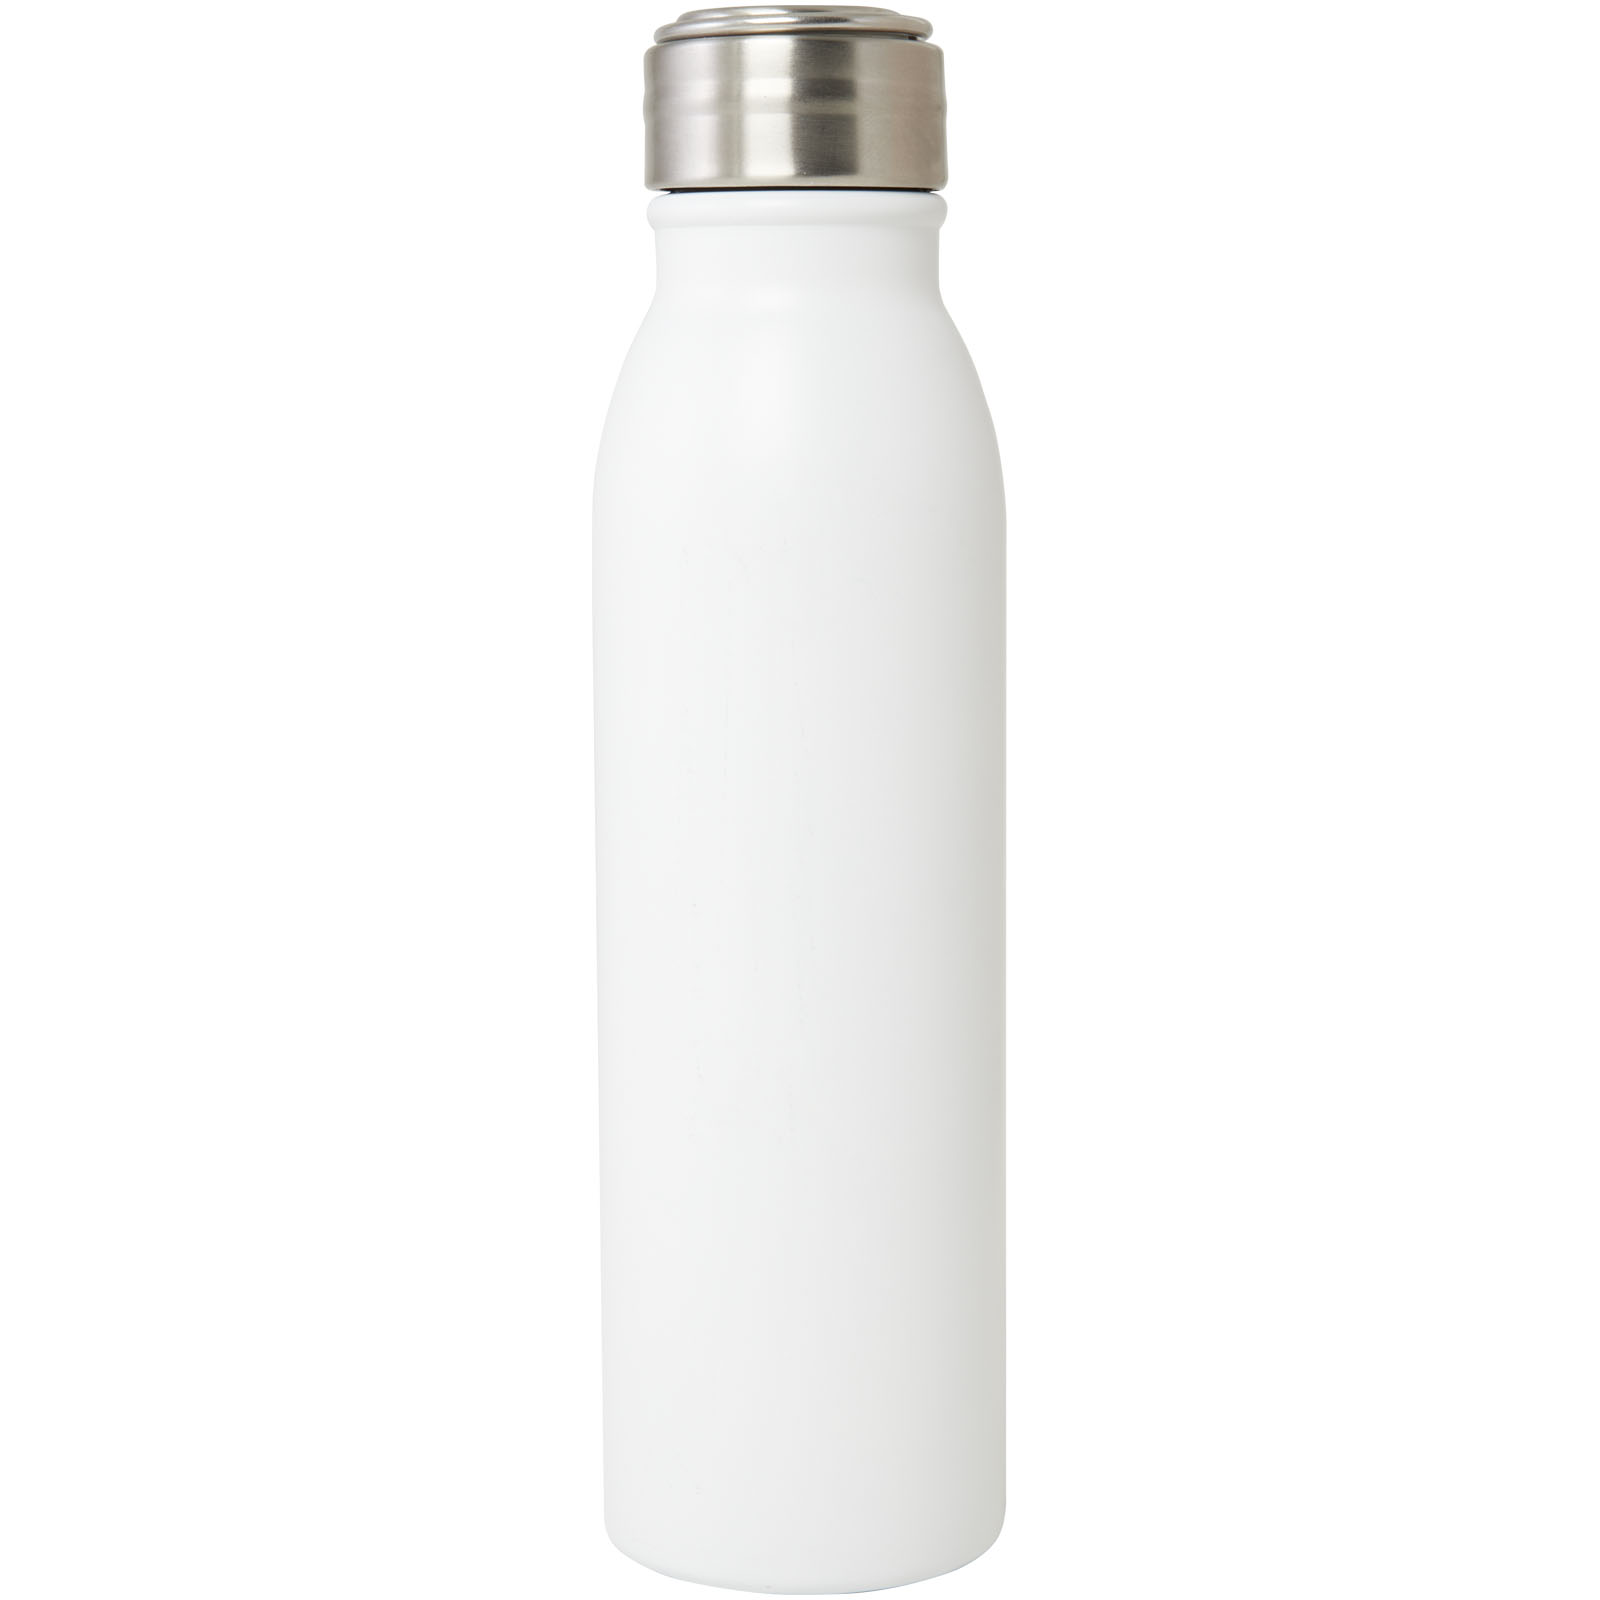 Advertising Water bottles - Harper 700 ml RCS certified stainless steel water bottle with metal loop - 1